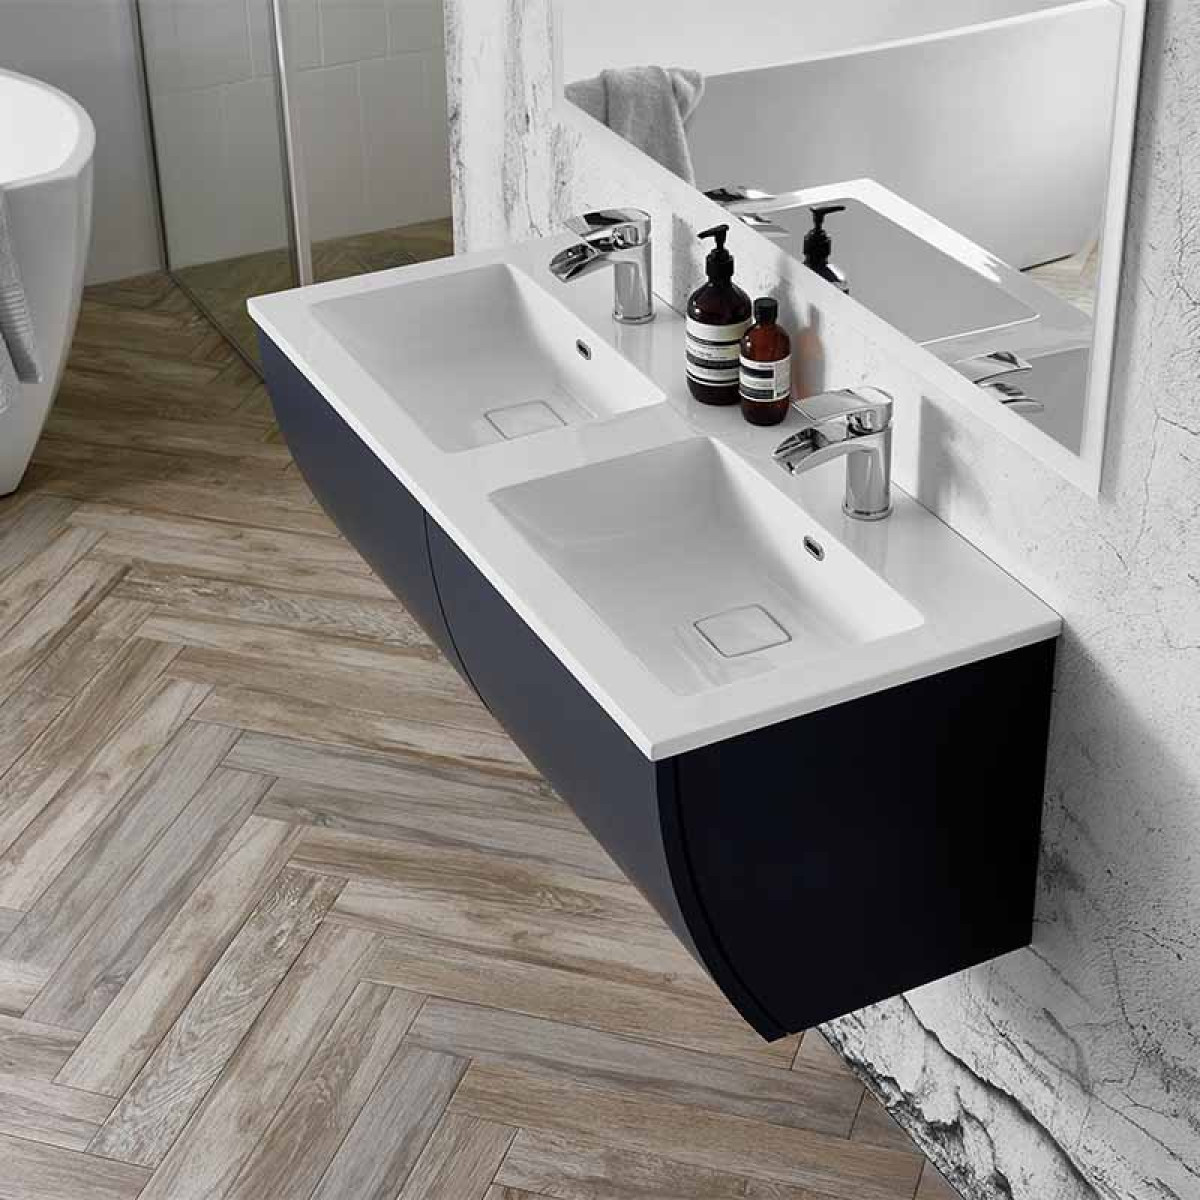 Elation Kiyo 1100mm Wall Hung Indigo, Double Sink Vanity Units For Bathrooms Uk